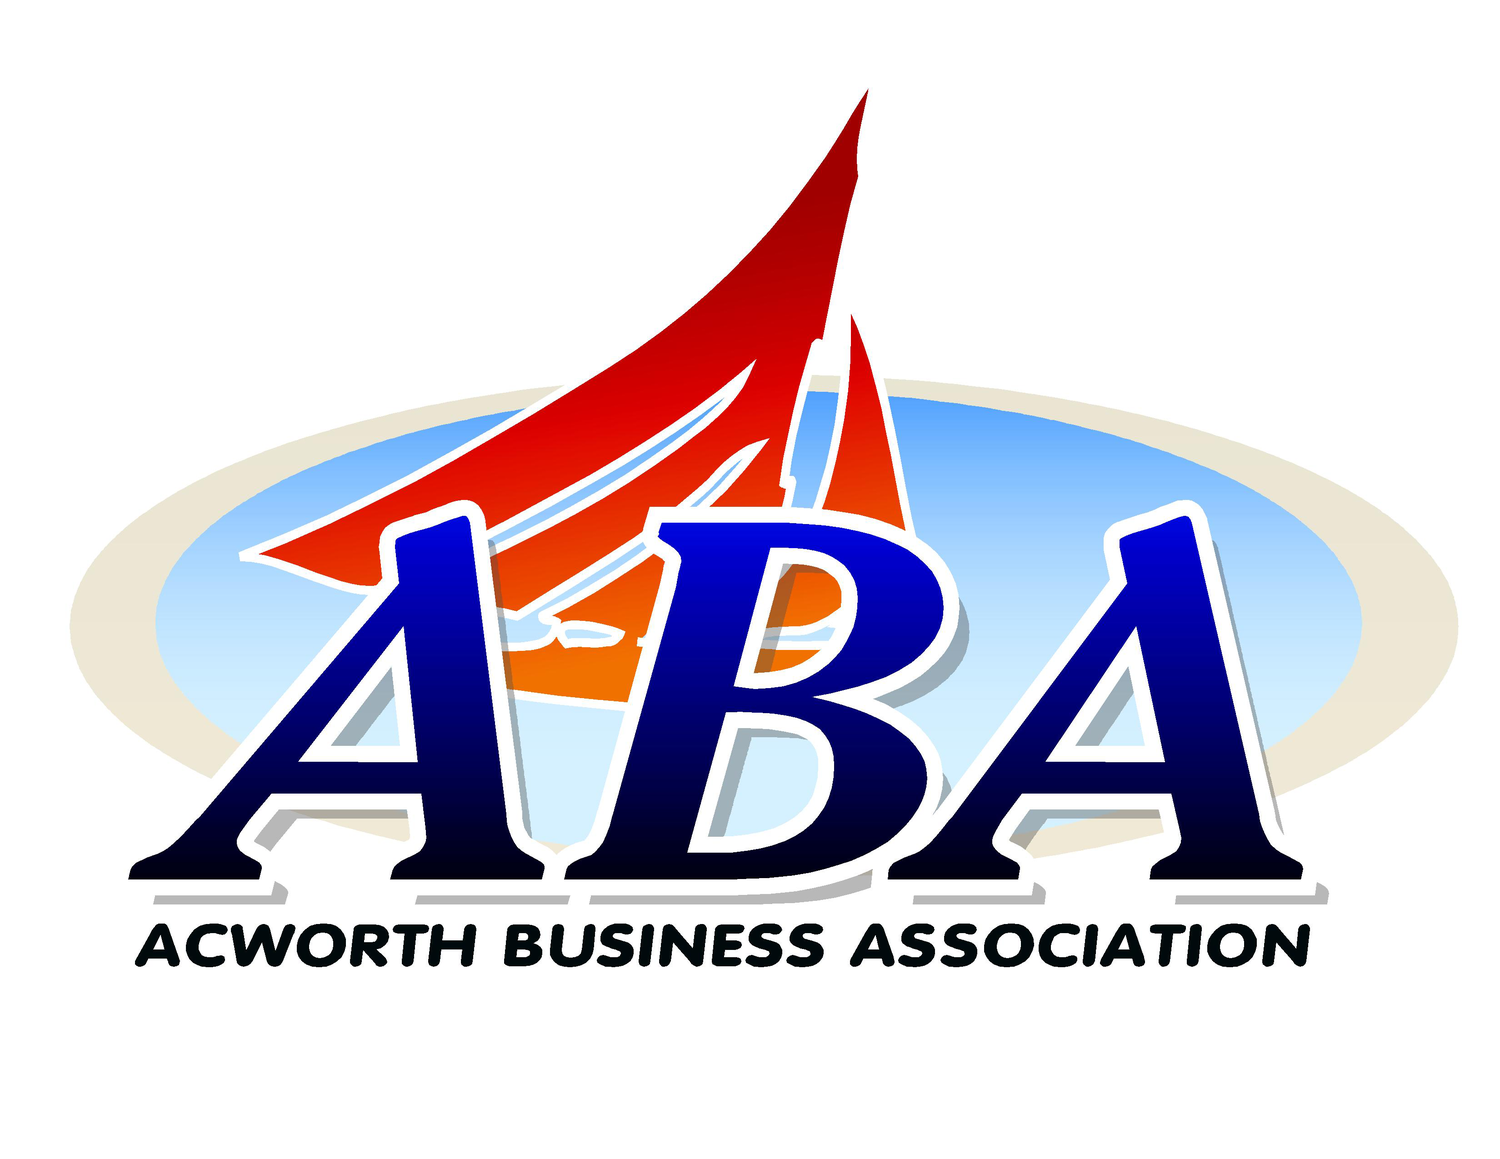 Business association. Бизнес ассоциации. ABA логотип. Акворт. Acworth, ga..